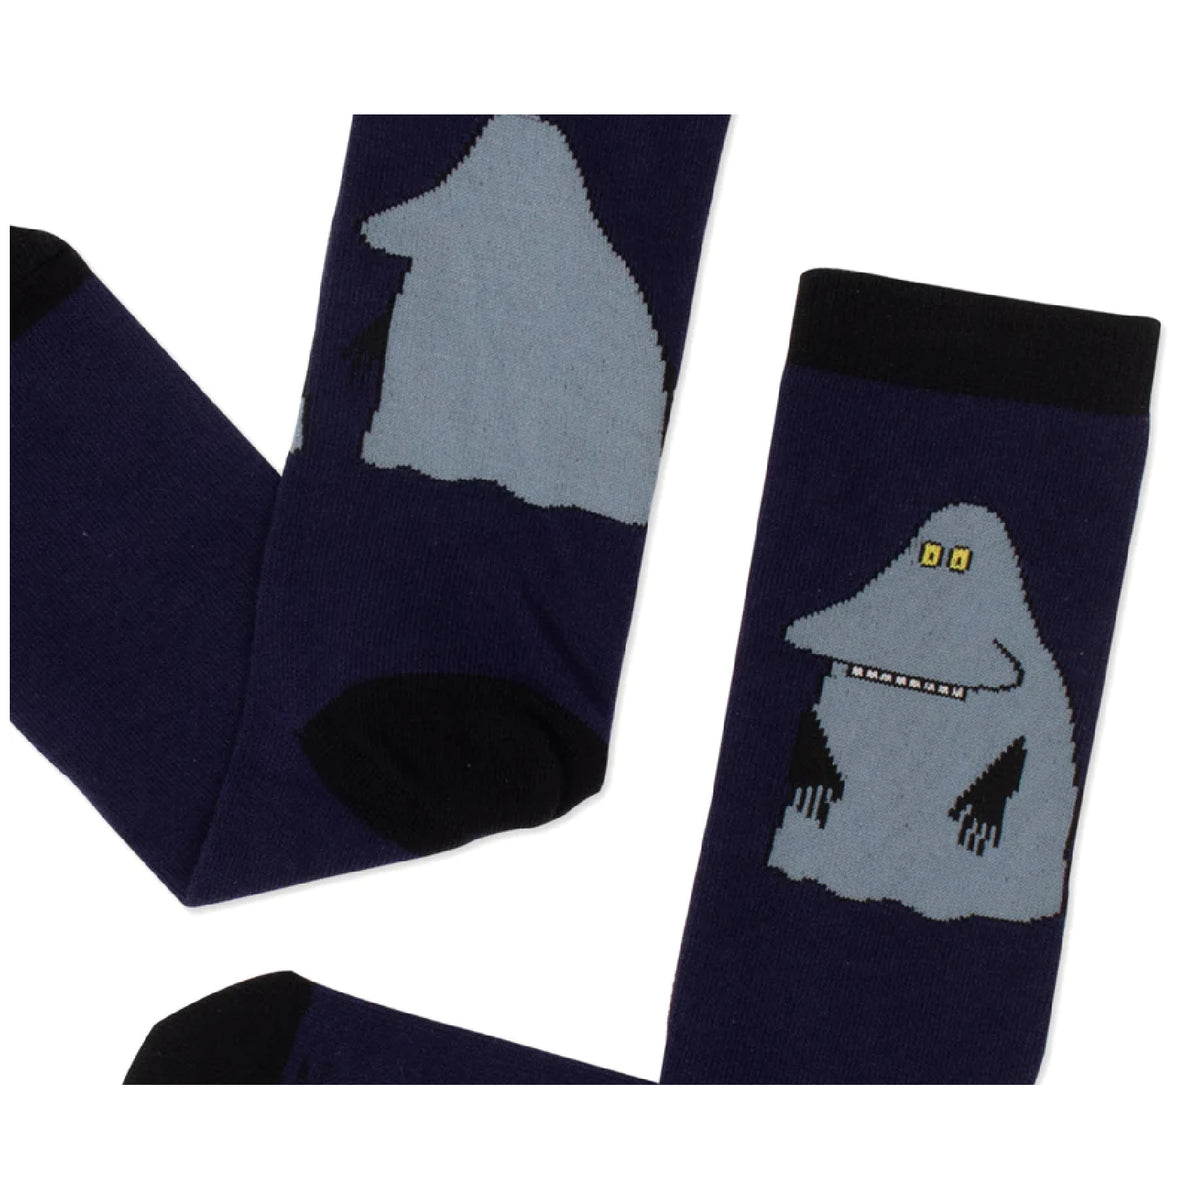 Moomin Socks The Groke Navy